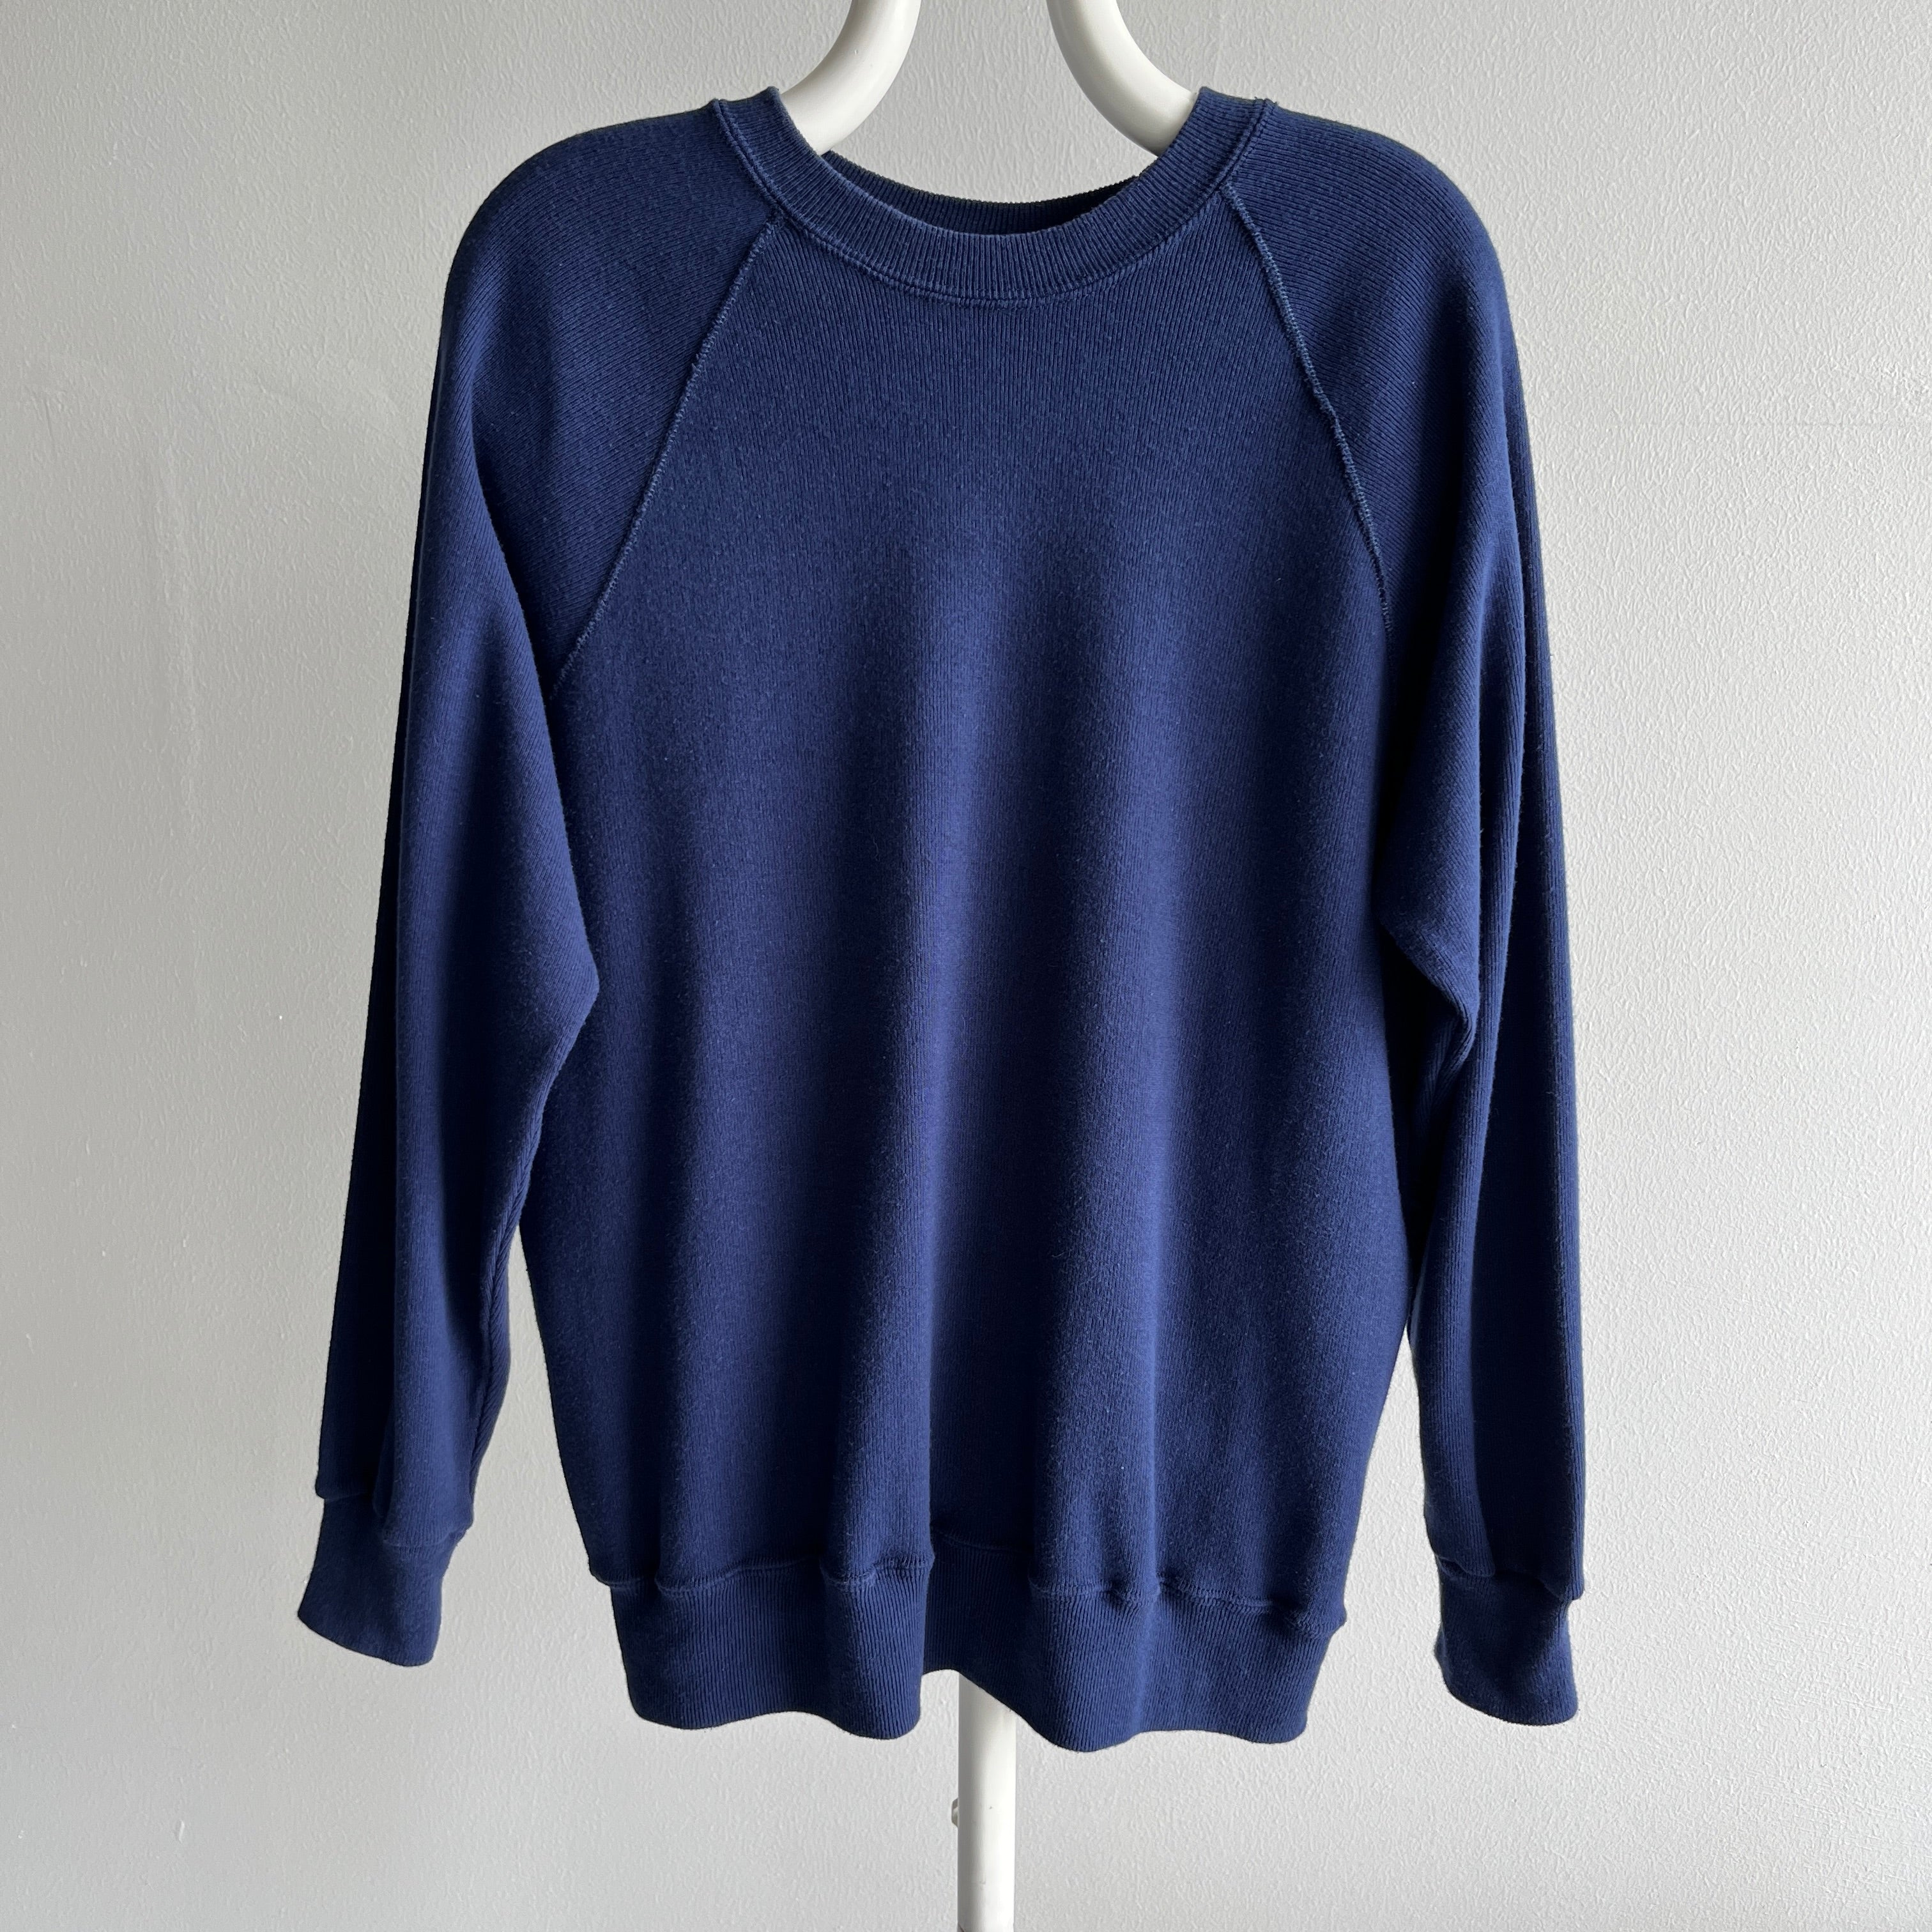 1980s Cotton Knit Bassett Walker Sweater - Cut Like A Sweatshirt, But Not Fleecy